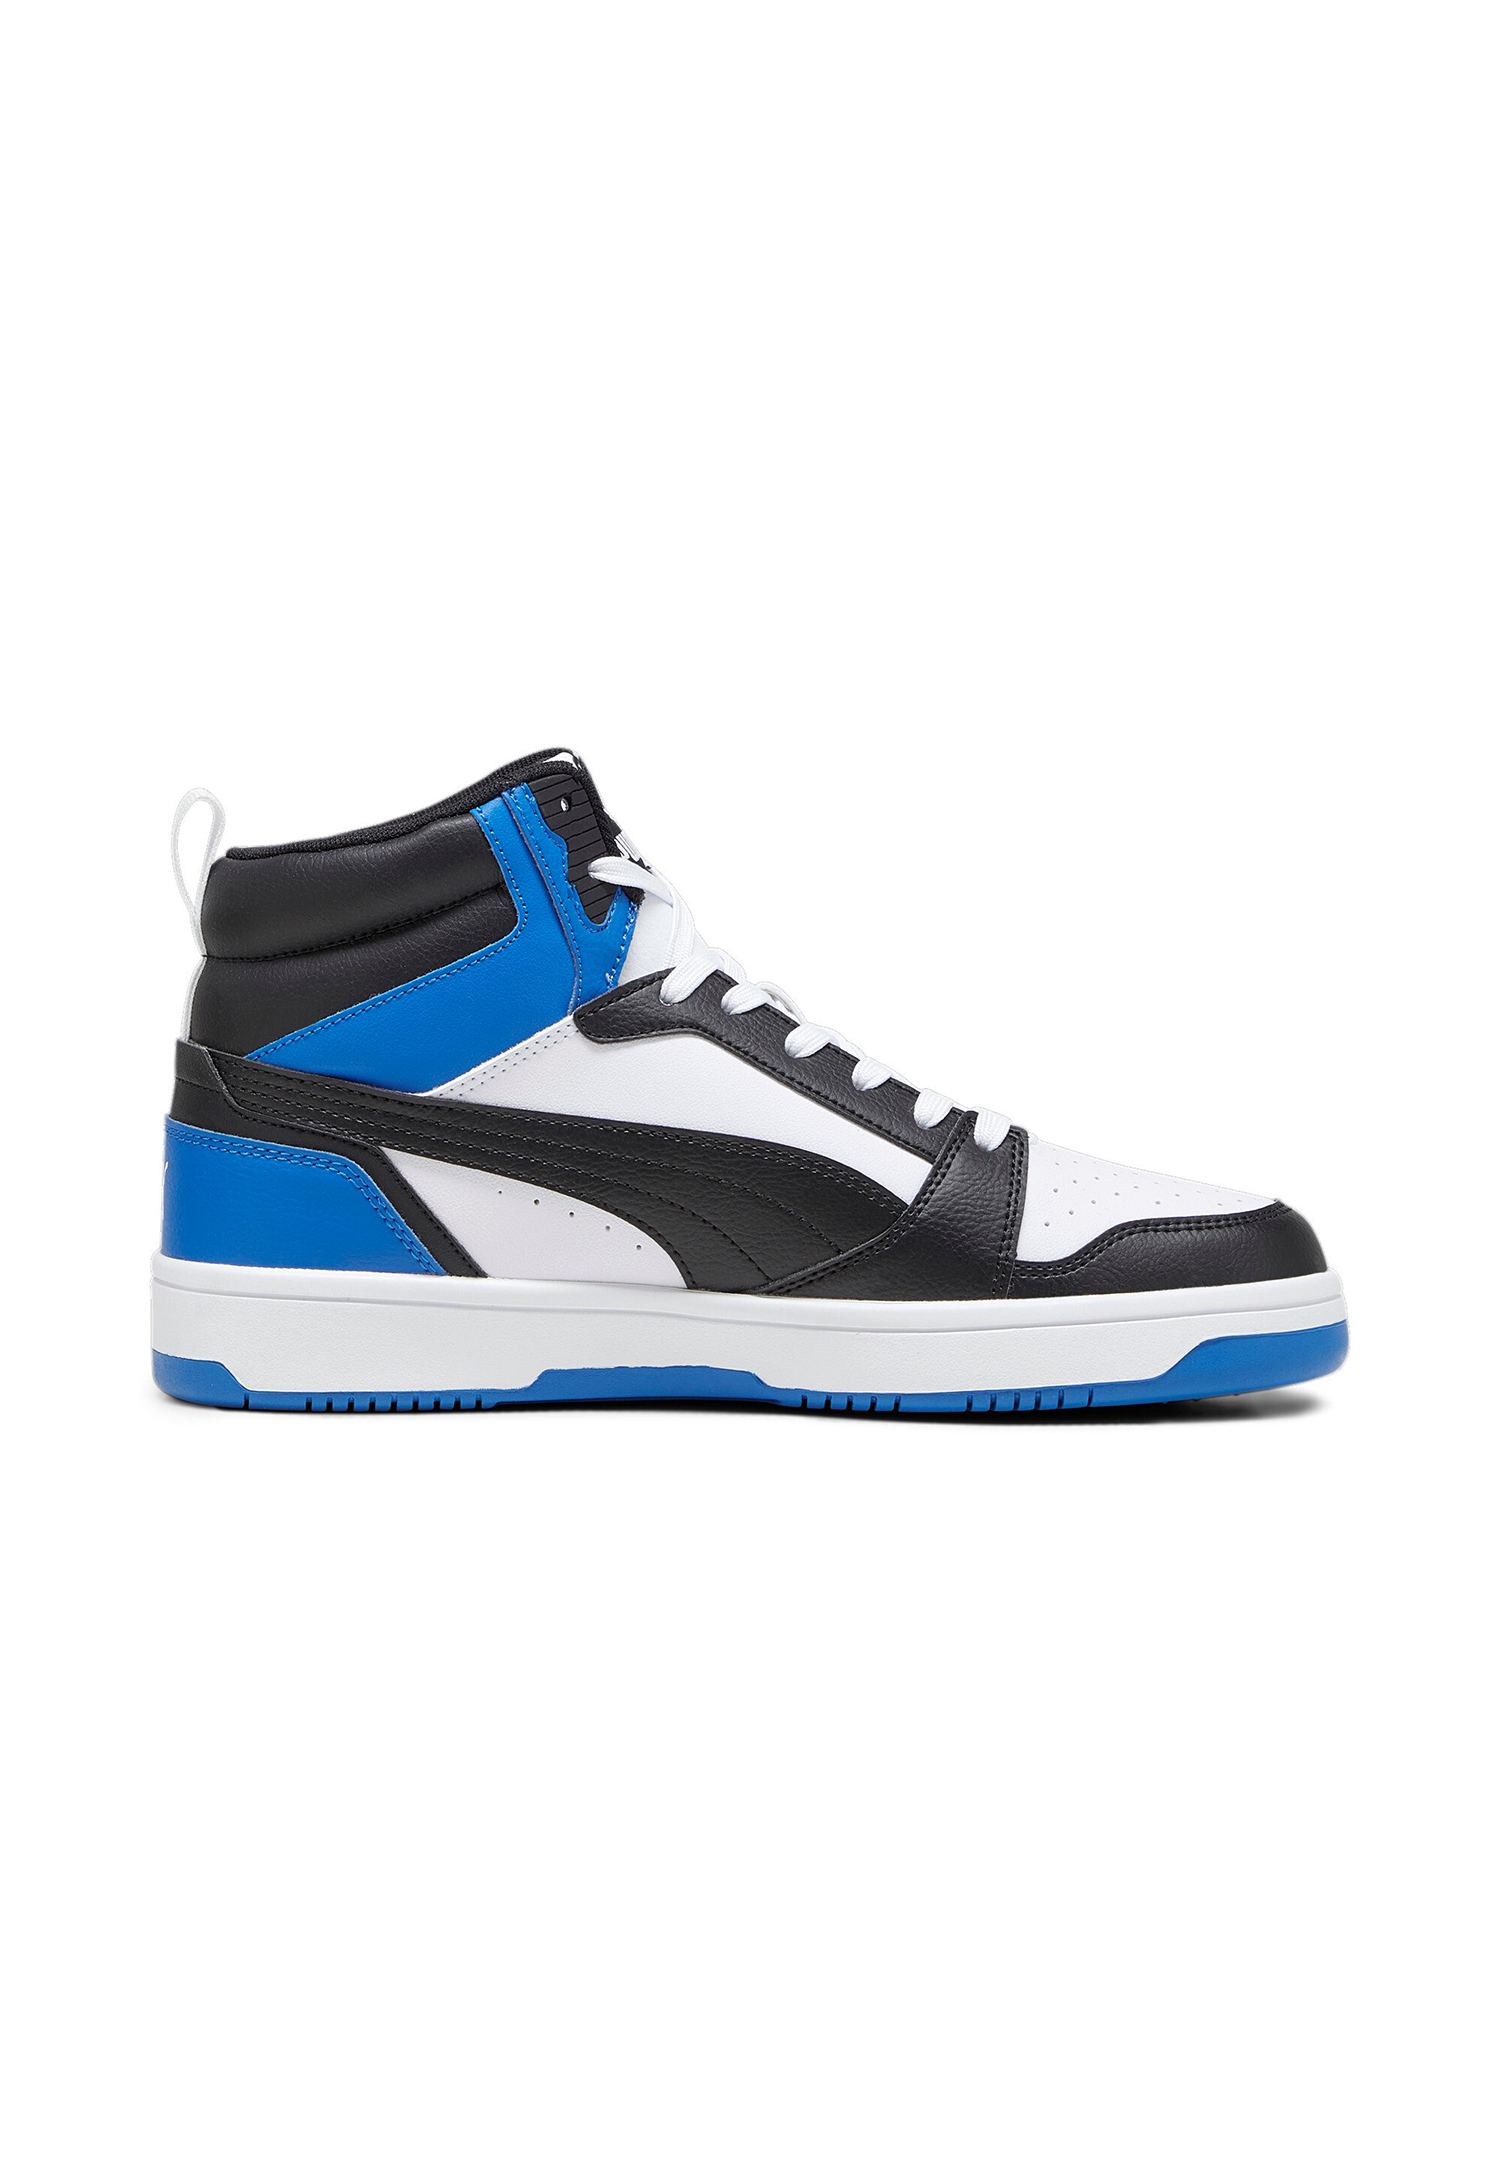 Puma Rebound v6 Hoher Sneaker Stiefel Boots Herren Sneaker 392326 10 weiss blau